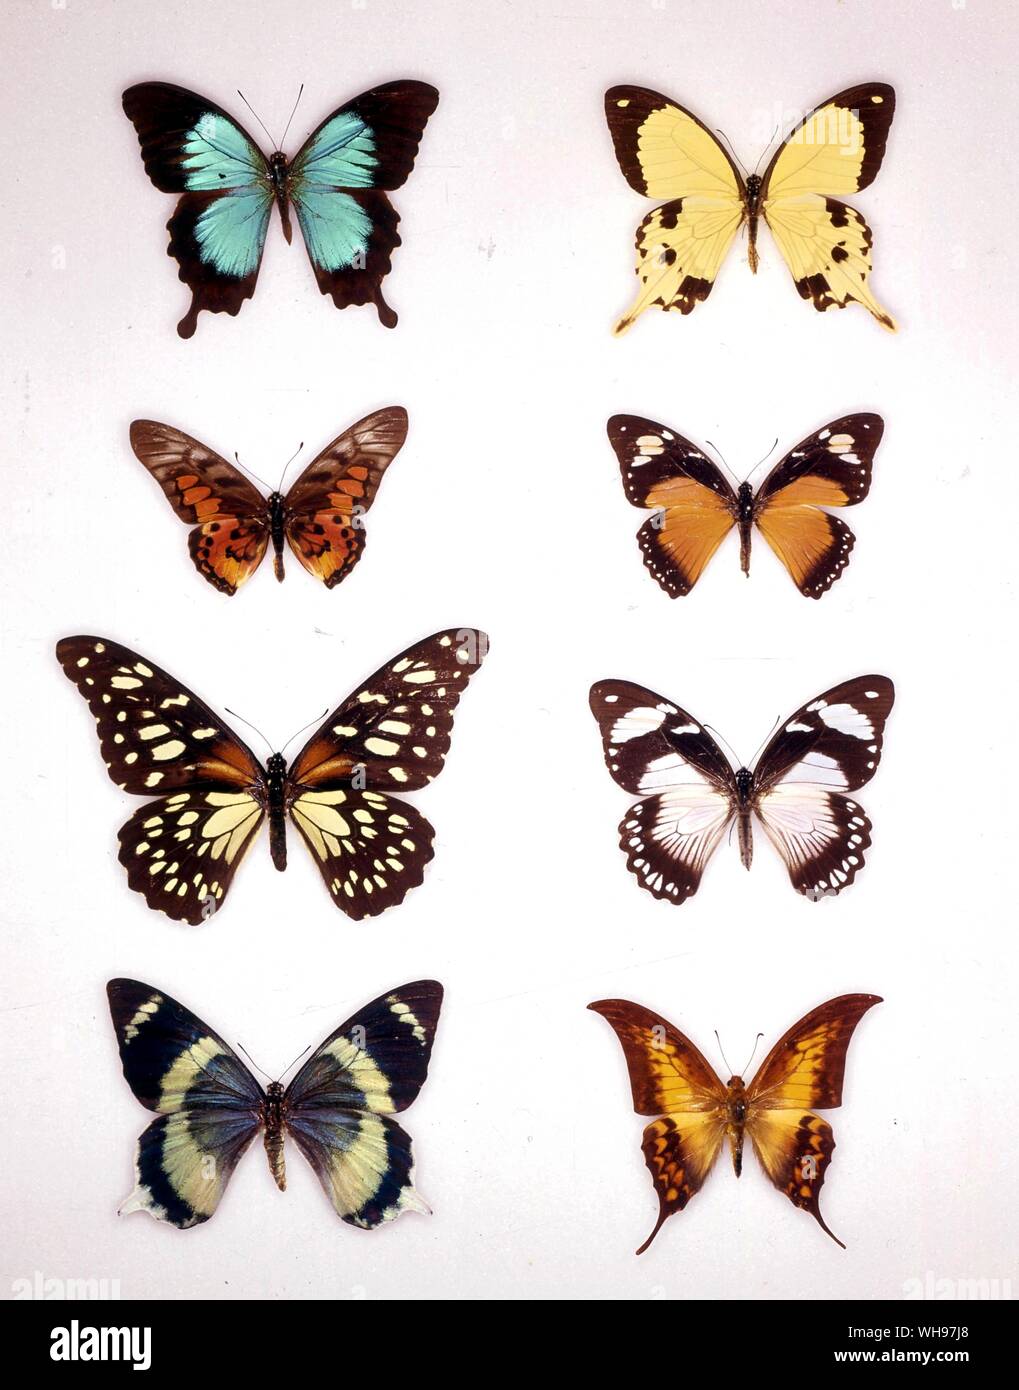 Papillons papillons/- (de gauche à droite) Papilio montrouzieri, Papilio dardanus (mâle), Graphium, ridleyanus Papilio dardanus (femelle), Rex Papila, Papilio dardanus (femelle), Papilio laglaizei Dabasa payeni, Banque D'Images